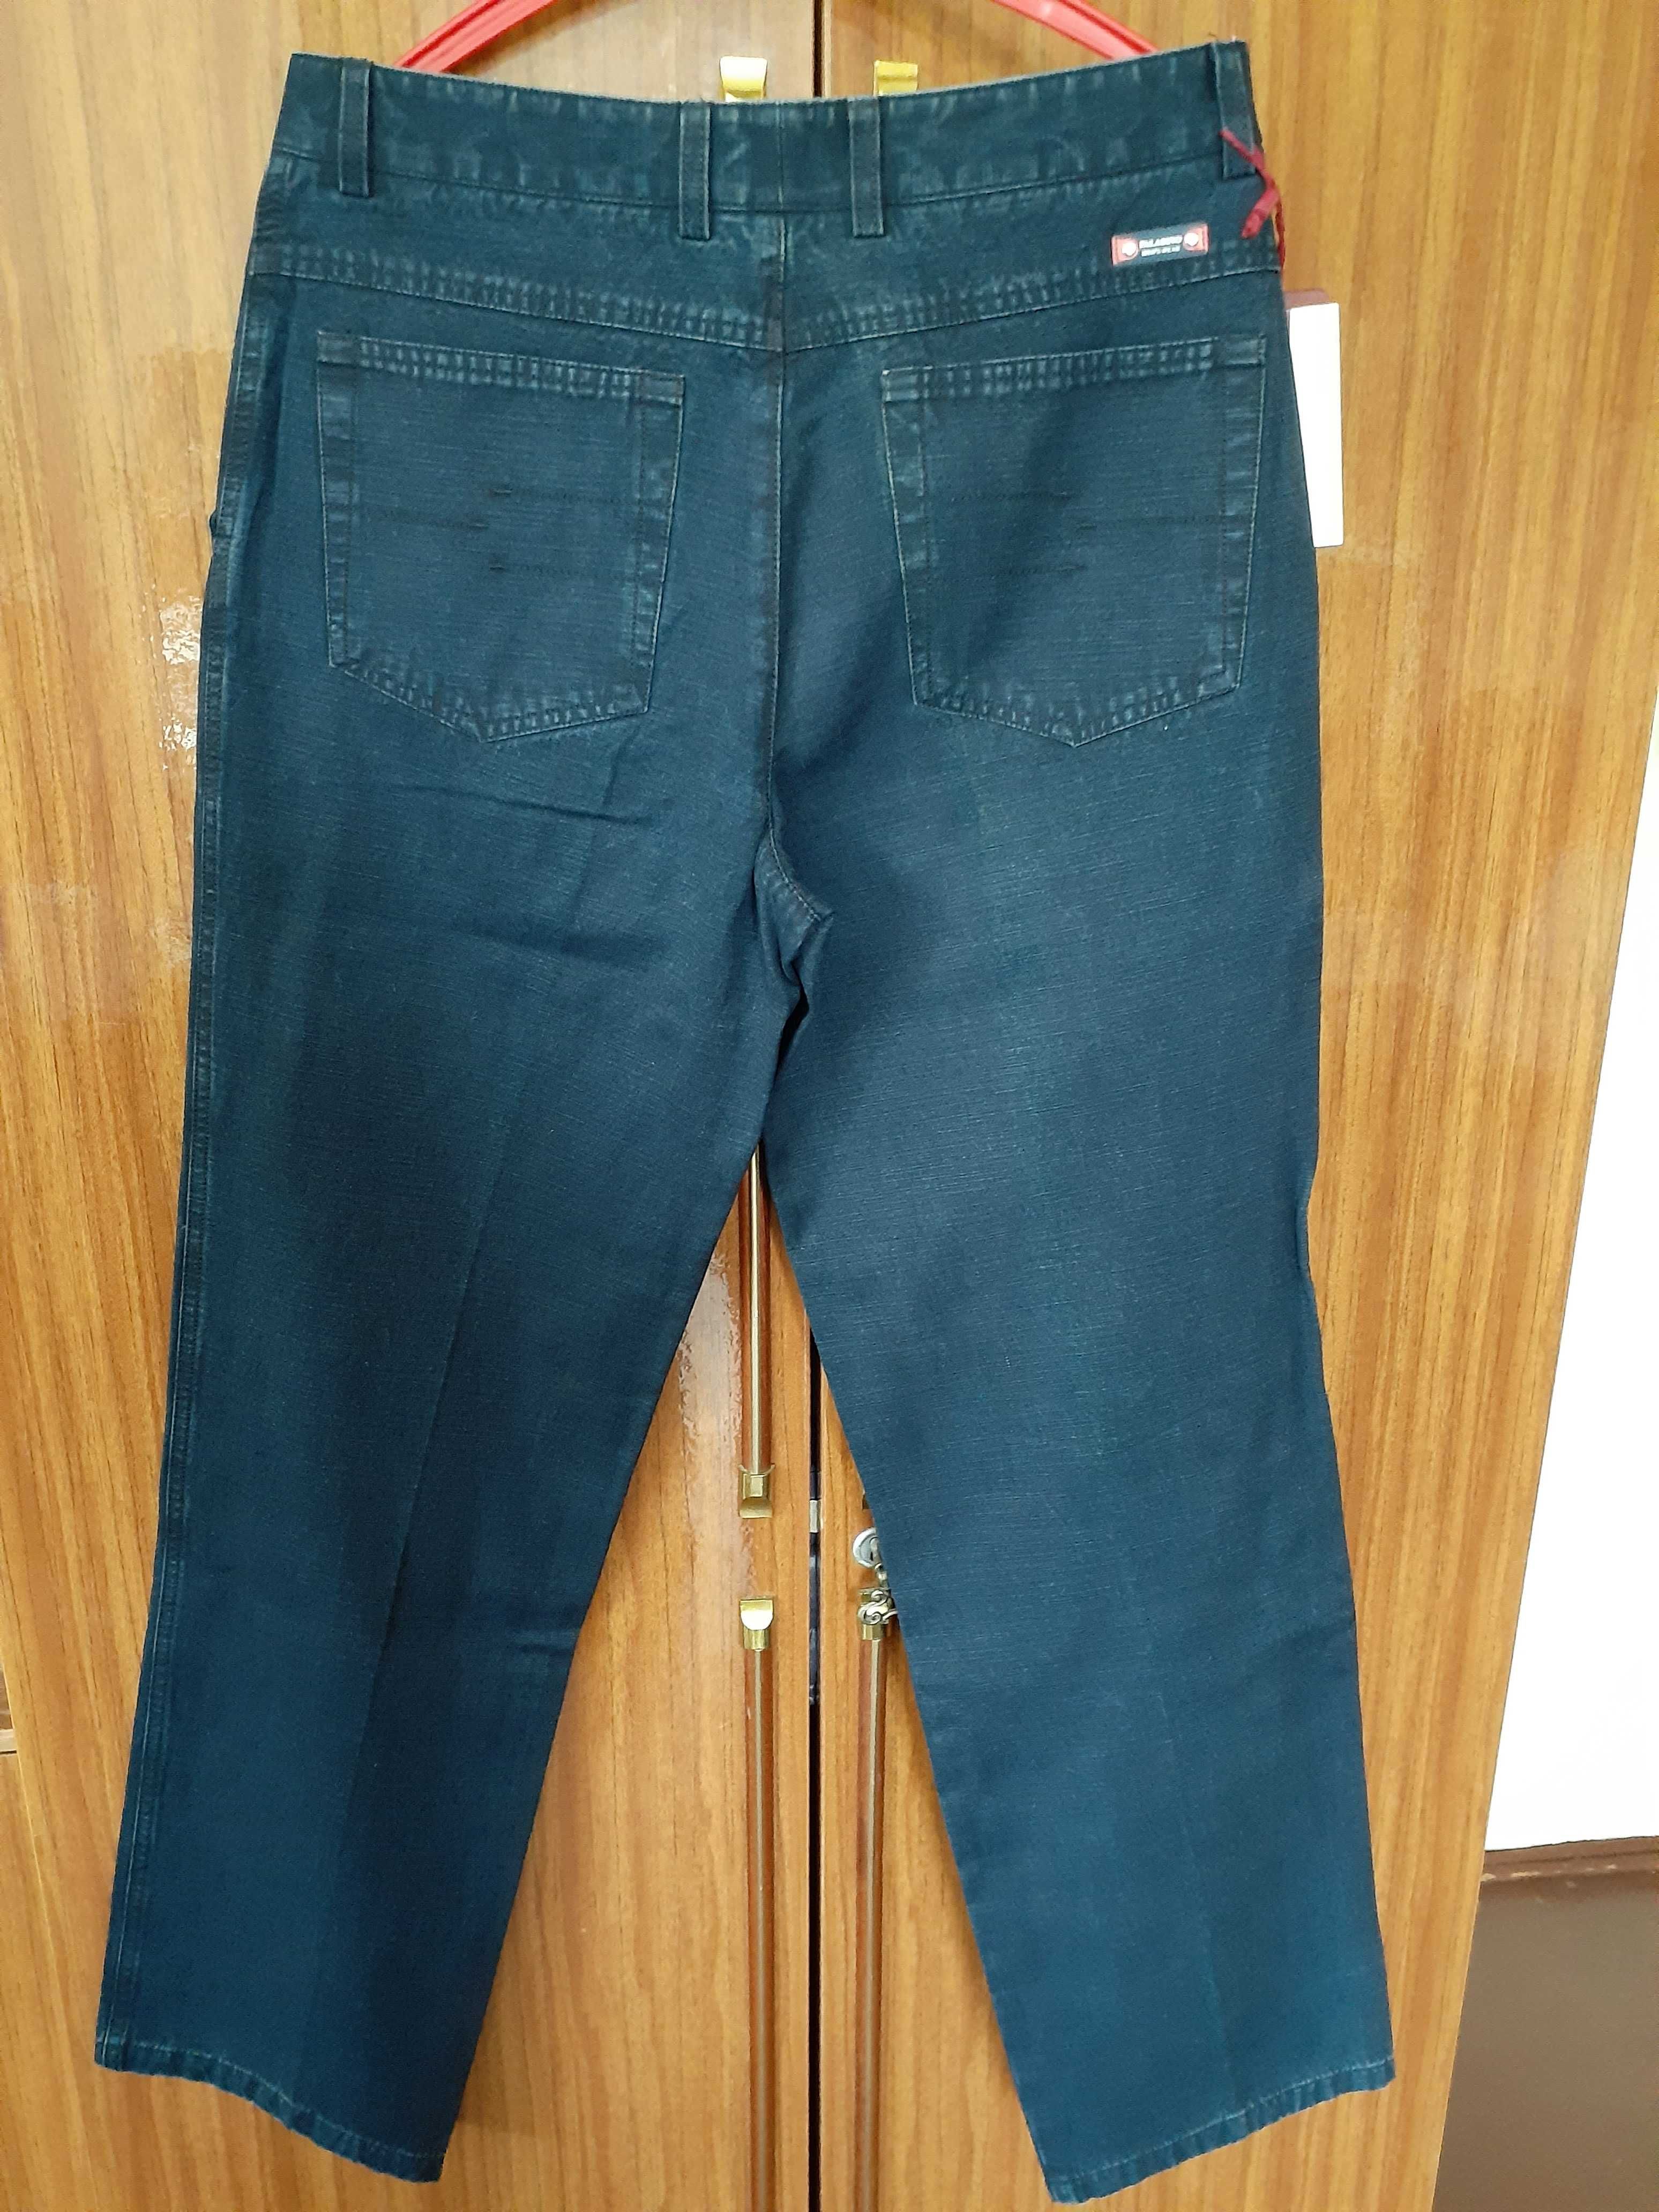 джинсы новые мужские размер 48